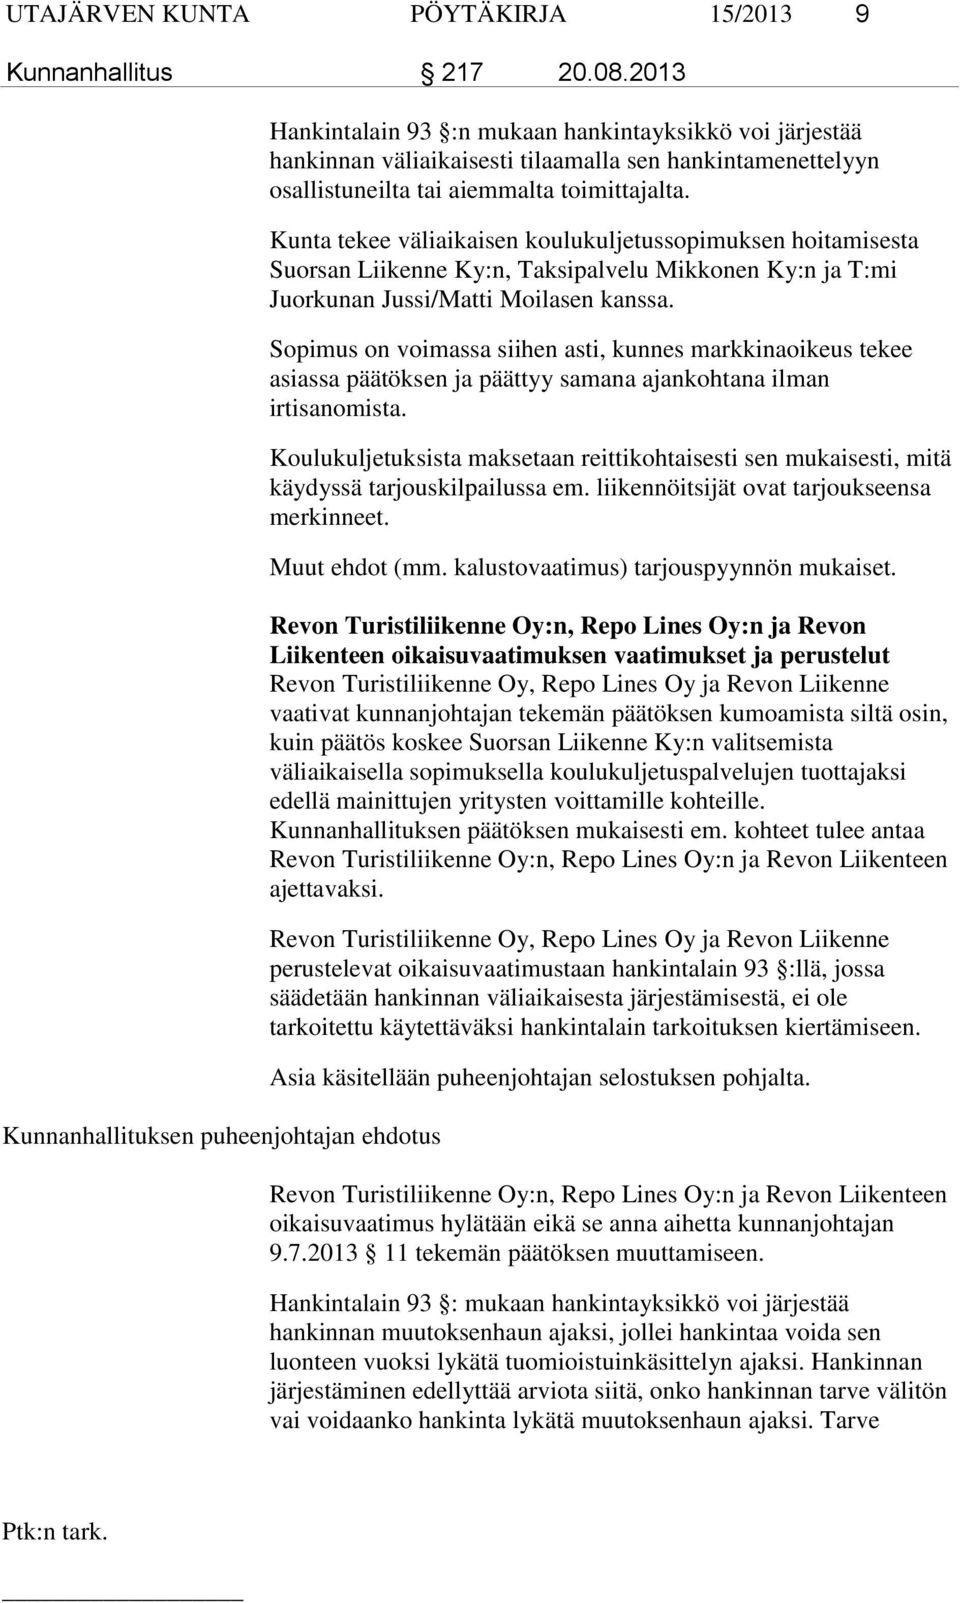 toimittajalta. Kunta tekee väliaikaisen koulukuljetussopimuksen hoitamisesta Suorsan Liikenne Ky:n, Taksipalvelu Mikkonen Ky:n ja T:mi Juorkunan Jussi/Matti Moilasen kanssa.